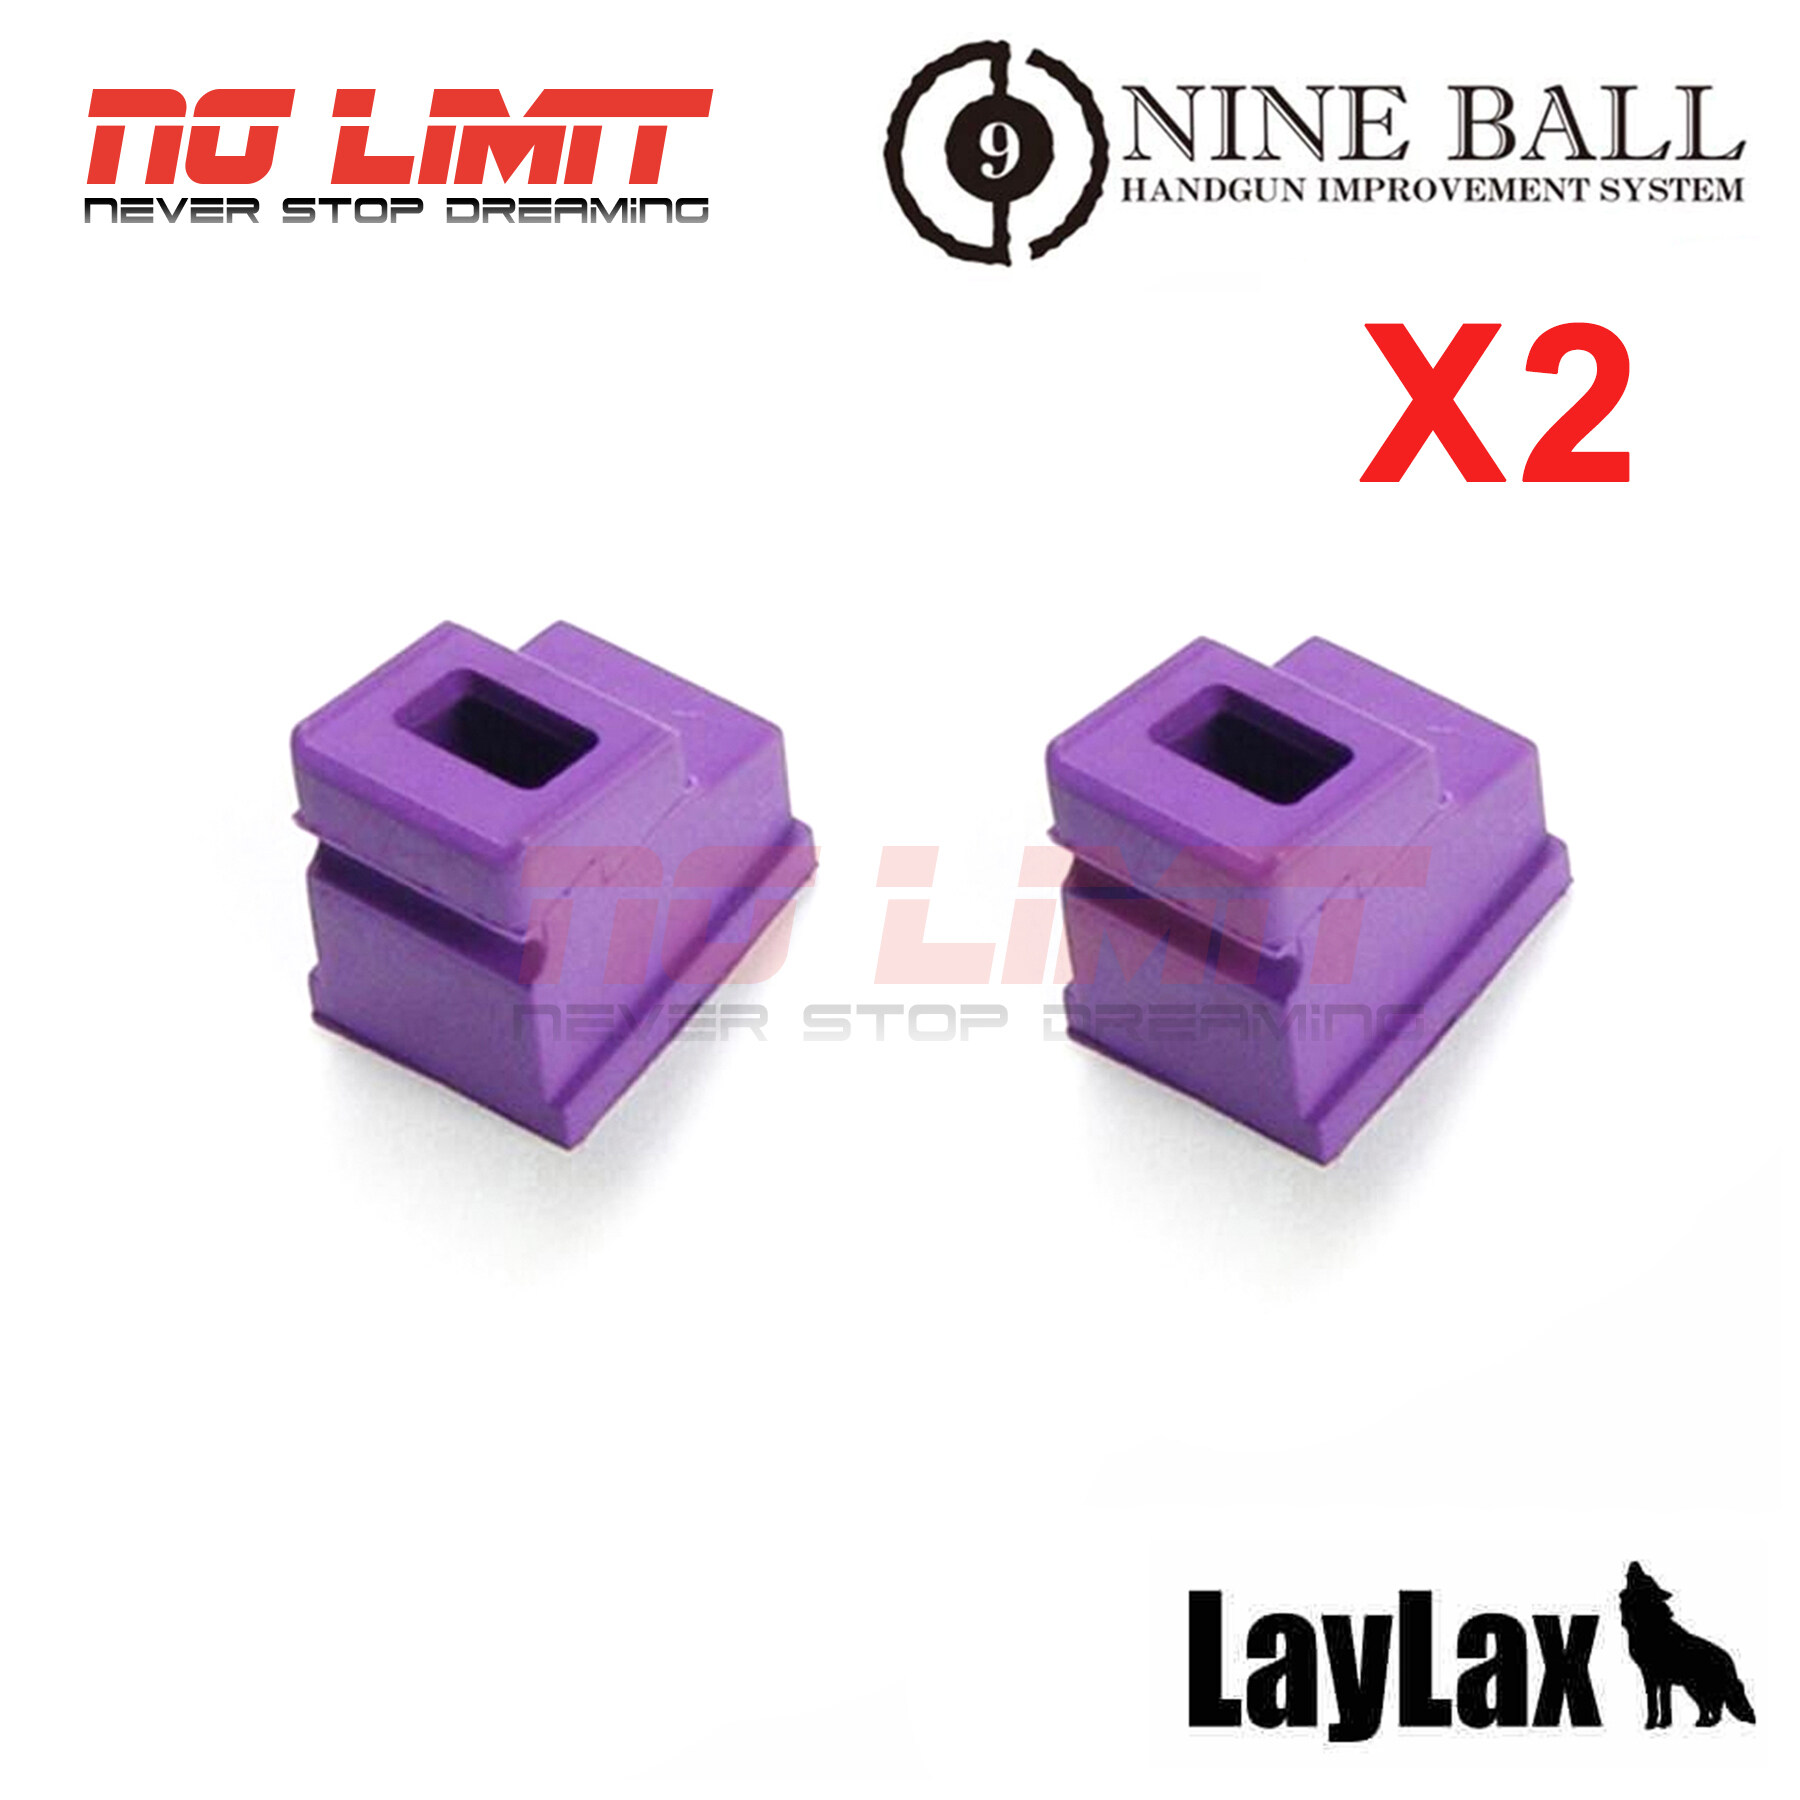 ยางปากแม็ก อัพเกรด LAYLAX Nine Ball Enhanced Rubber Magazine Gasket สำหรับ Tokyo Marui Hi-Capa 5.1 / 4.3 / P226 Made in Japan สินค้าคุณภาพ ได้ตามภาพตัวอย่าง ถ่ายจากสินค้าจริง อะไหล่บีบีกัน ชิ้นส่วนอัพเกรด